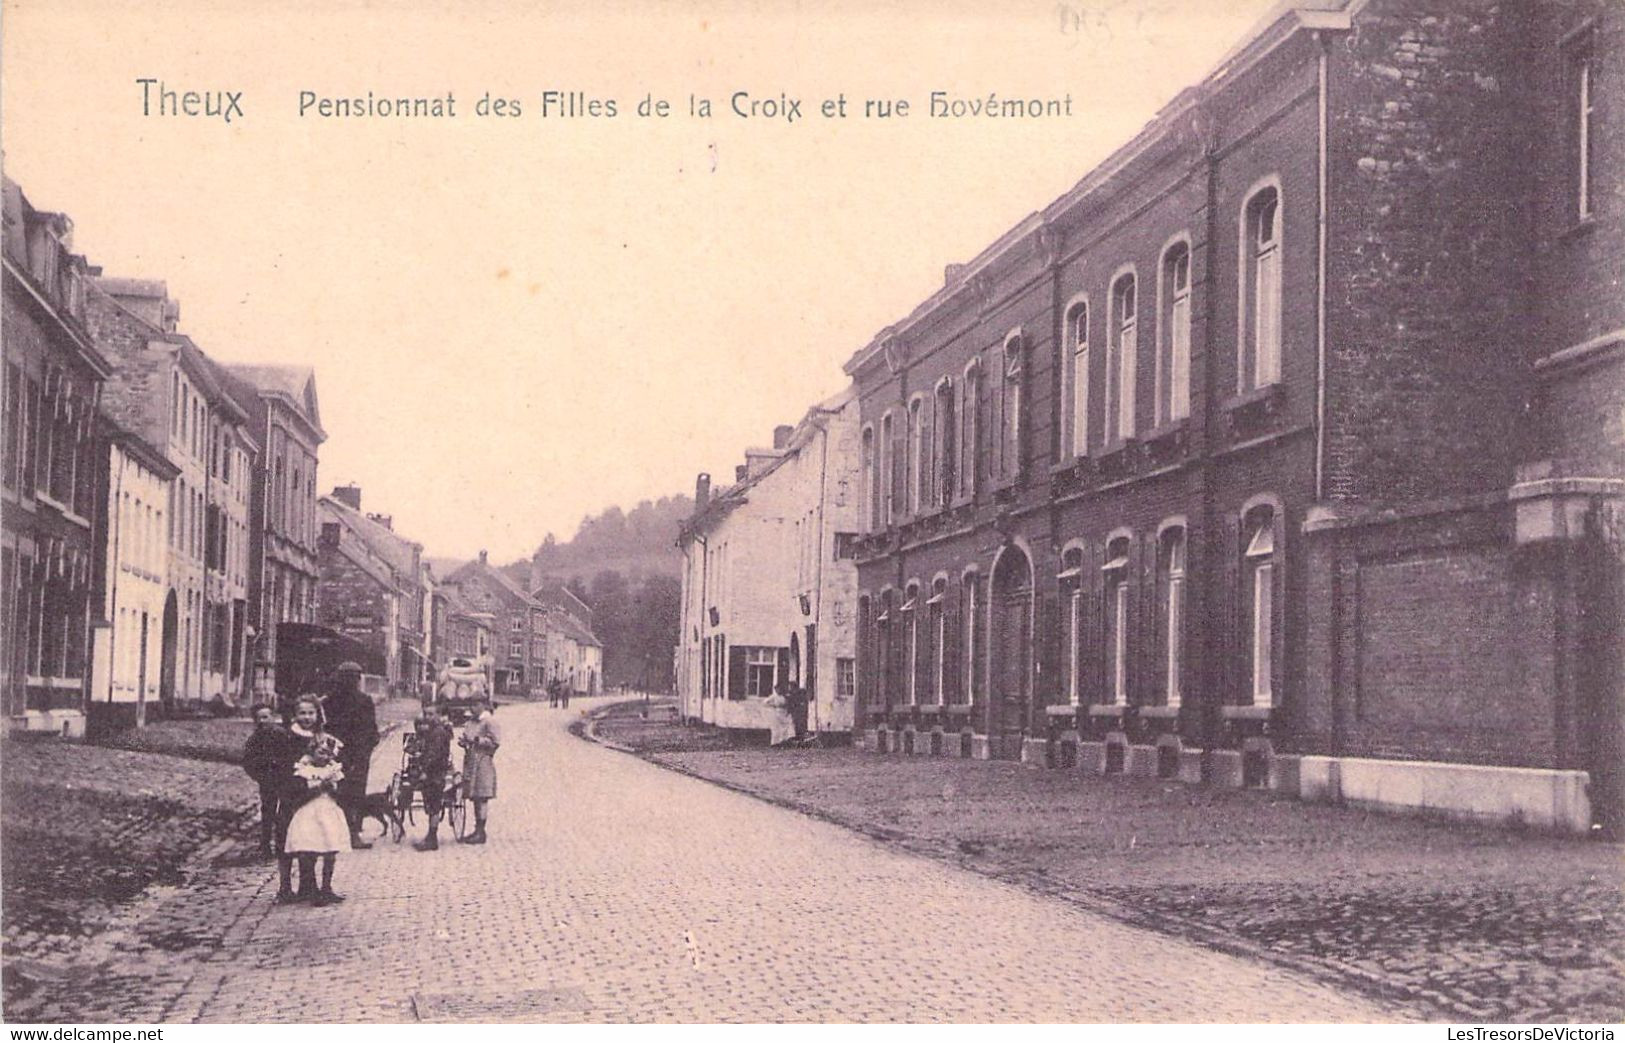 Belgique - Theux - Pensionnat Des Filles De La Croix Et Rue Hovémont - Phototypie Achille  - Carte Postale Ancienne - Verviers